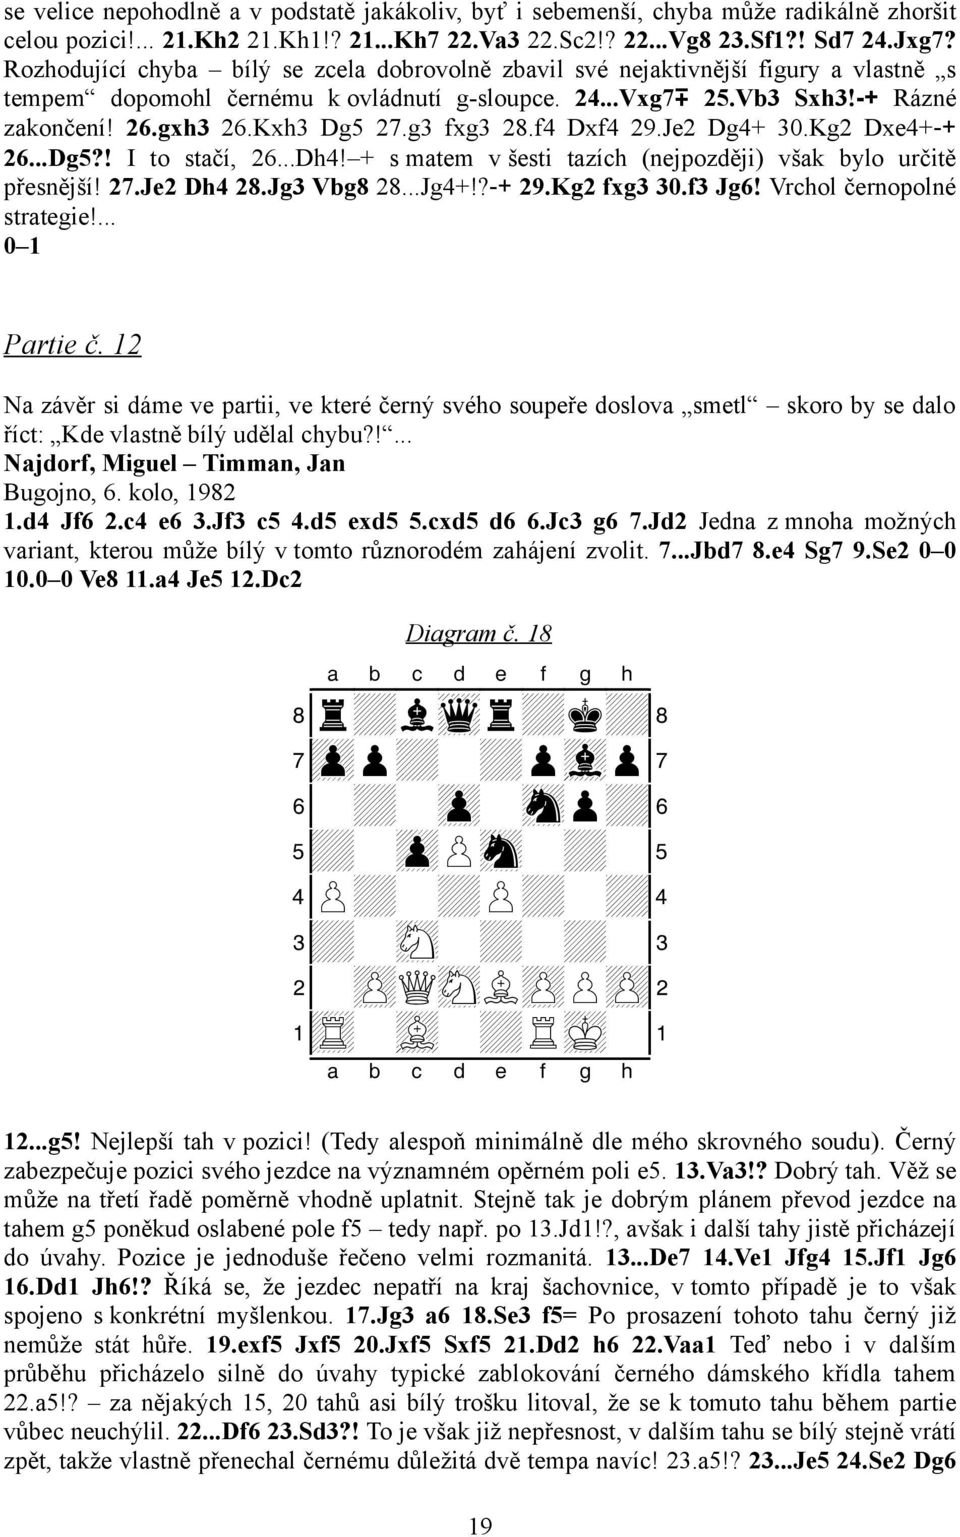 g3 fxg3 28.f4 Dxf4 29.Je2 Dg4+ 30.Kg2 Dxe4+ + 26...Dg5?! I to stačí, 26...Dh4! + s matem v šesti tazích (nejpozději) však bylo určitě přesnější! 27.Je2 Dh4 28.Jg3 Vbg8 28...Jg4+!? + 29.Kg2 fxg3 30.